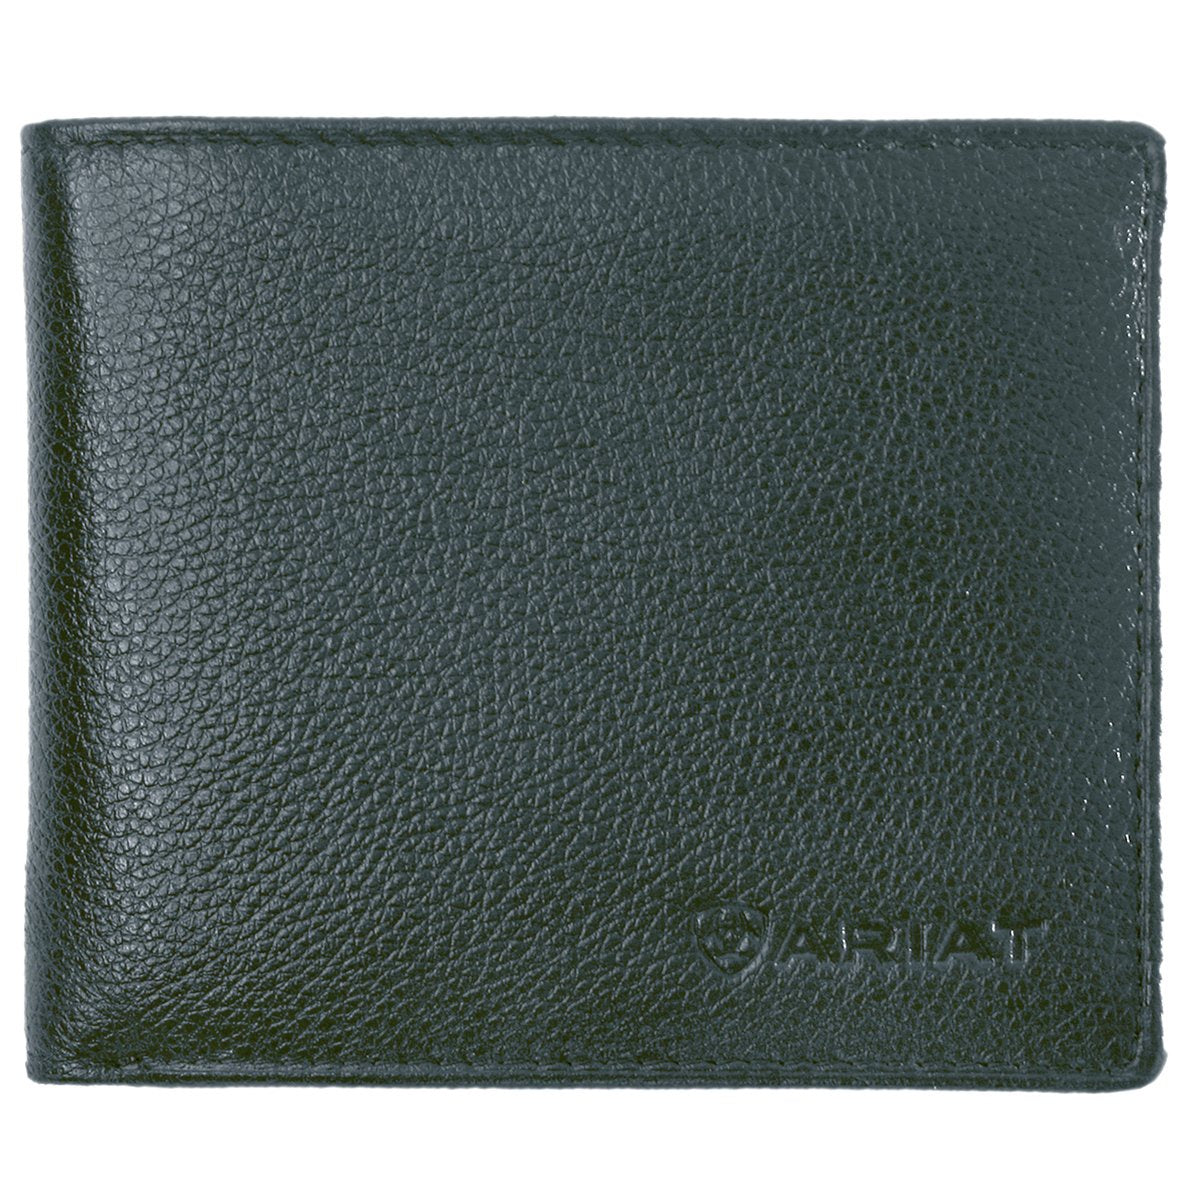 Ariat Bi Fold Wallet - WLT2106A (4896469385293)